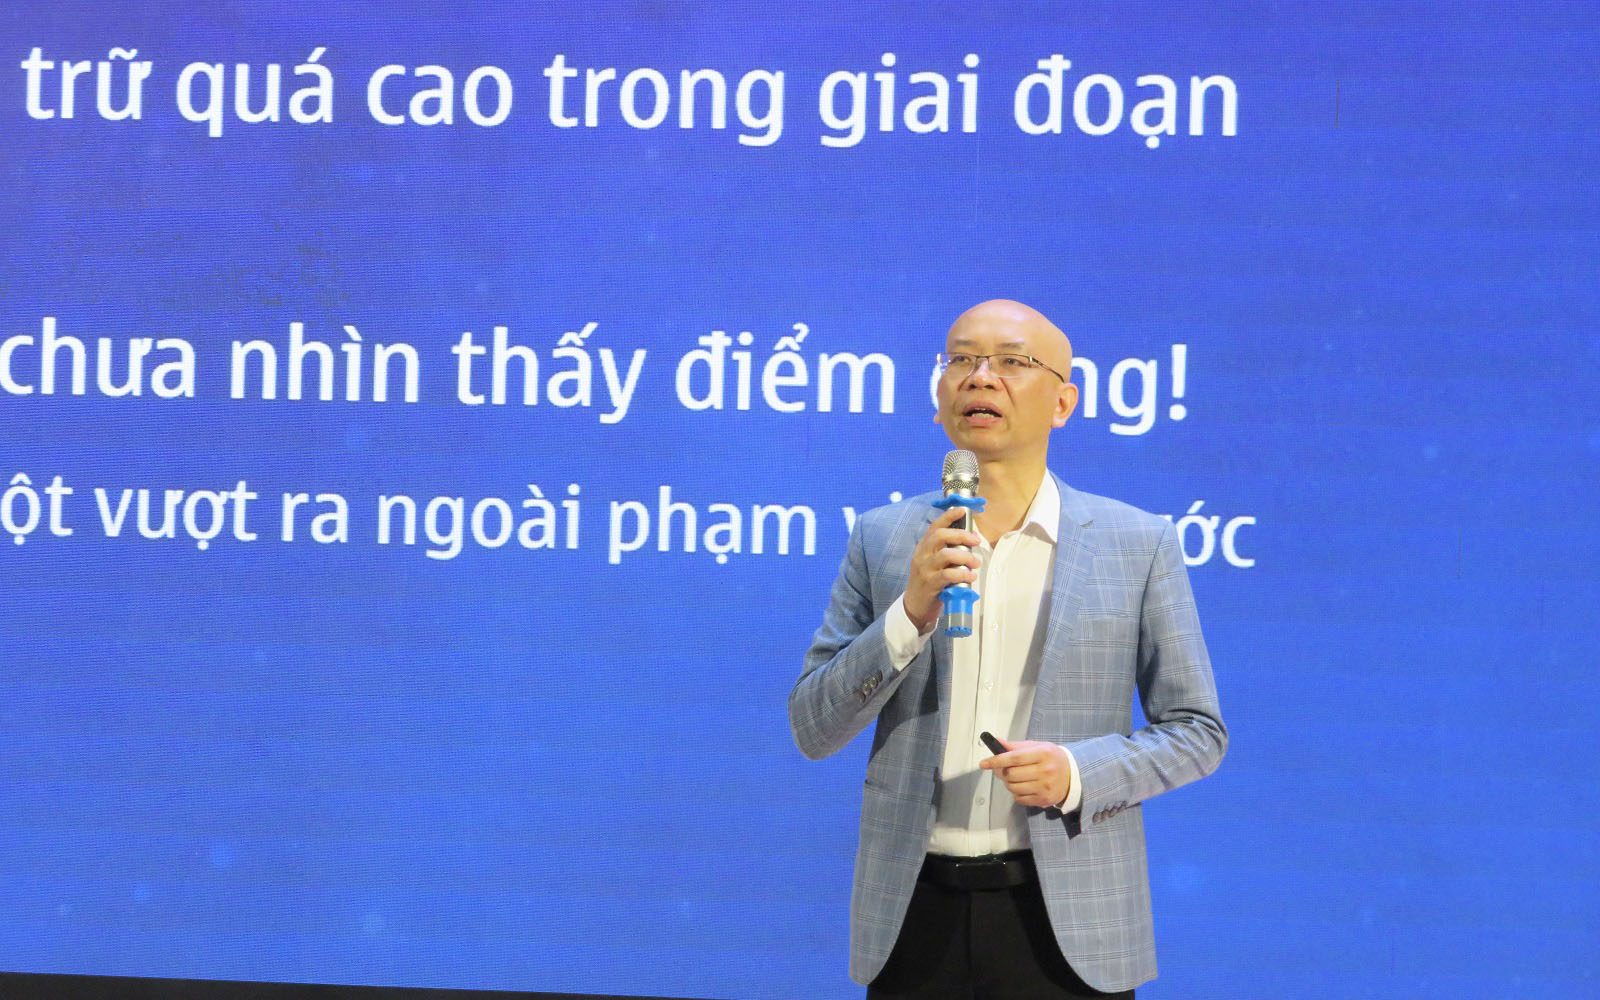 Ông Trần Thanh Hải - Phó Cục trưởng Cục Xuất nhập khẩu (Bộ Công Thương), Chủ tịch danh dự VALOMA cho biết, ứng dụng công nghệ thông tin hiện đang là xu hướng phát triển rất lớn trong lĩnh vực logistics